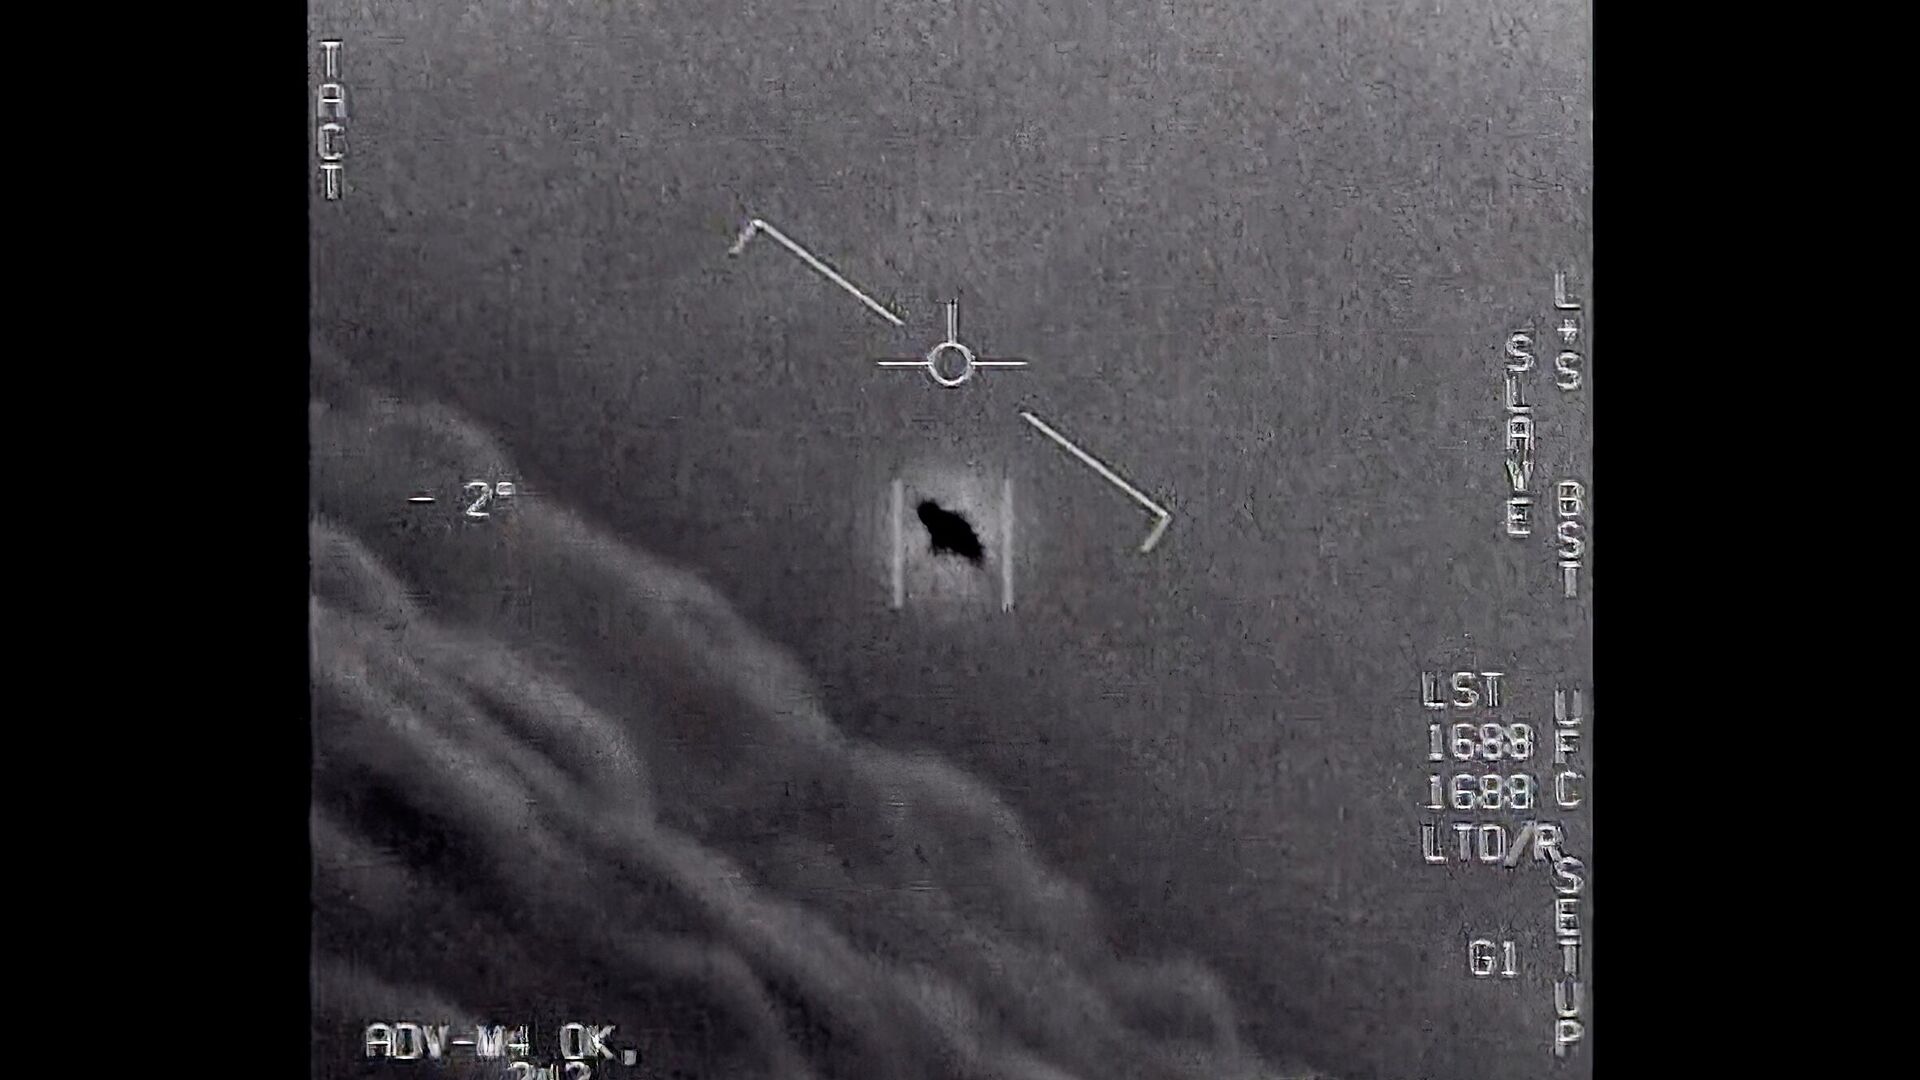 Chính phủ Mỹ những năm qua đã công bố nhiều tài liệu mật về các vụ chạm trán UFO.